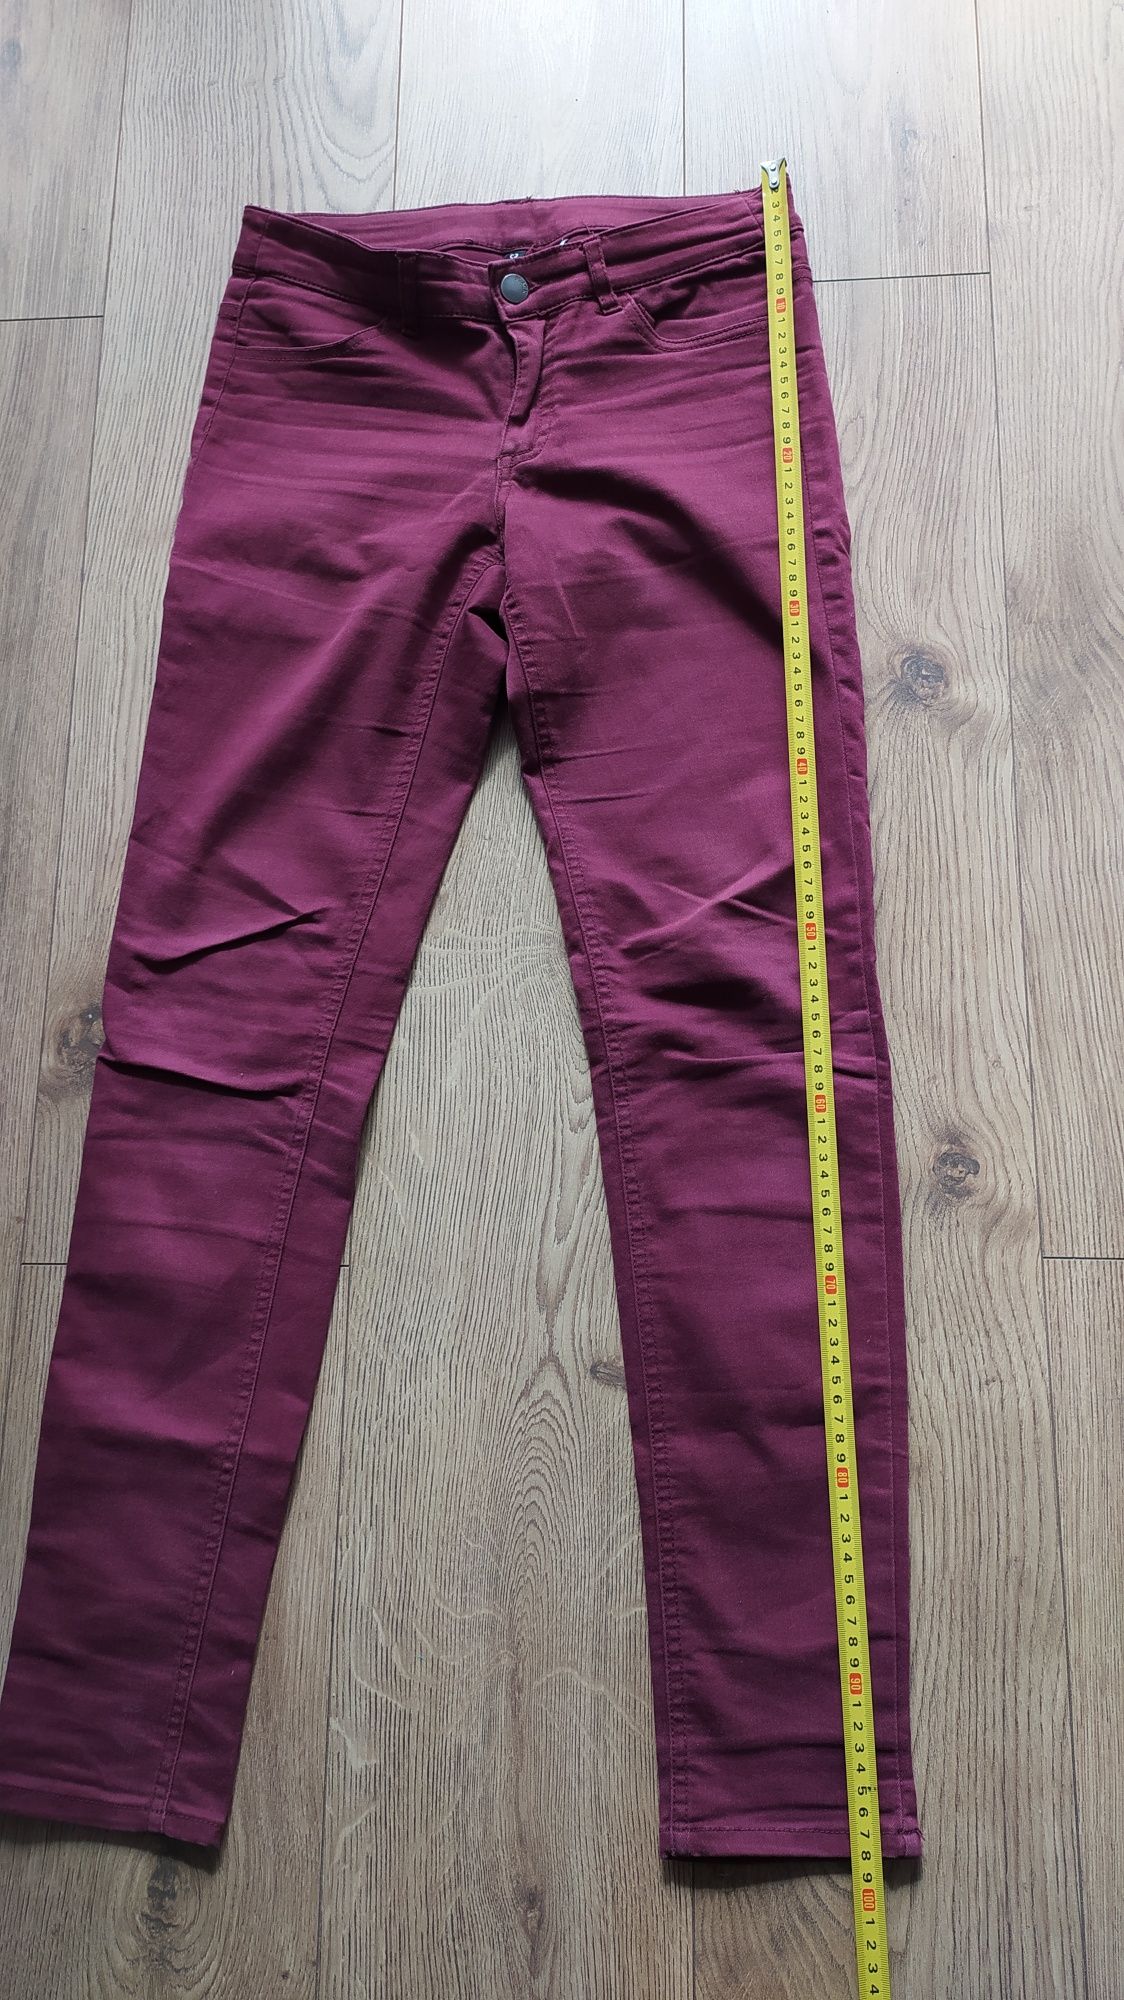 Spodnie fioletowe, rozmiar 36, jeansowe, damskie, wygodne.